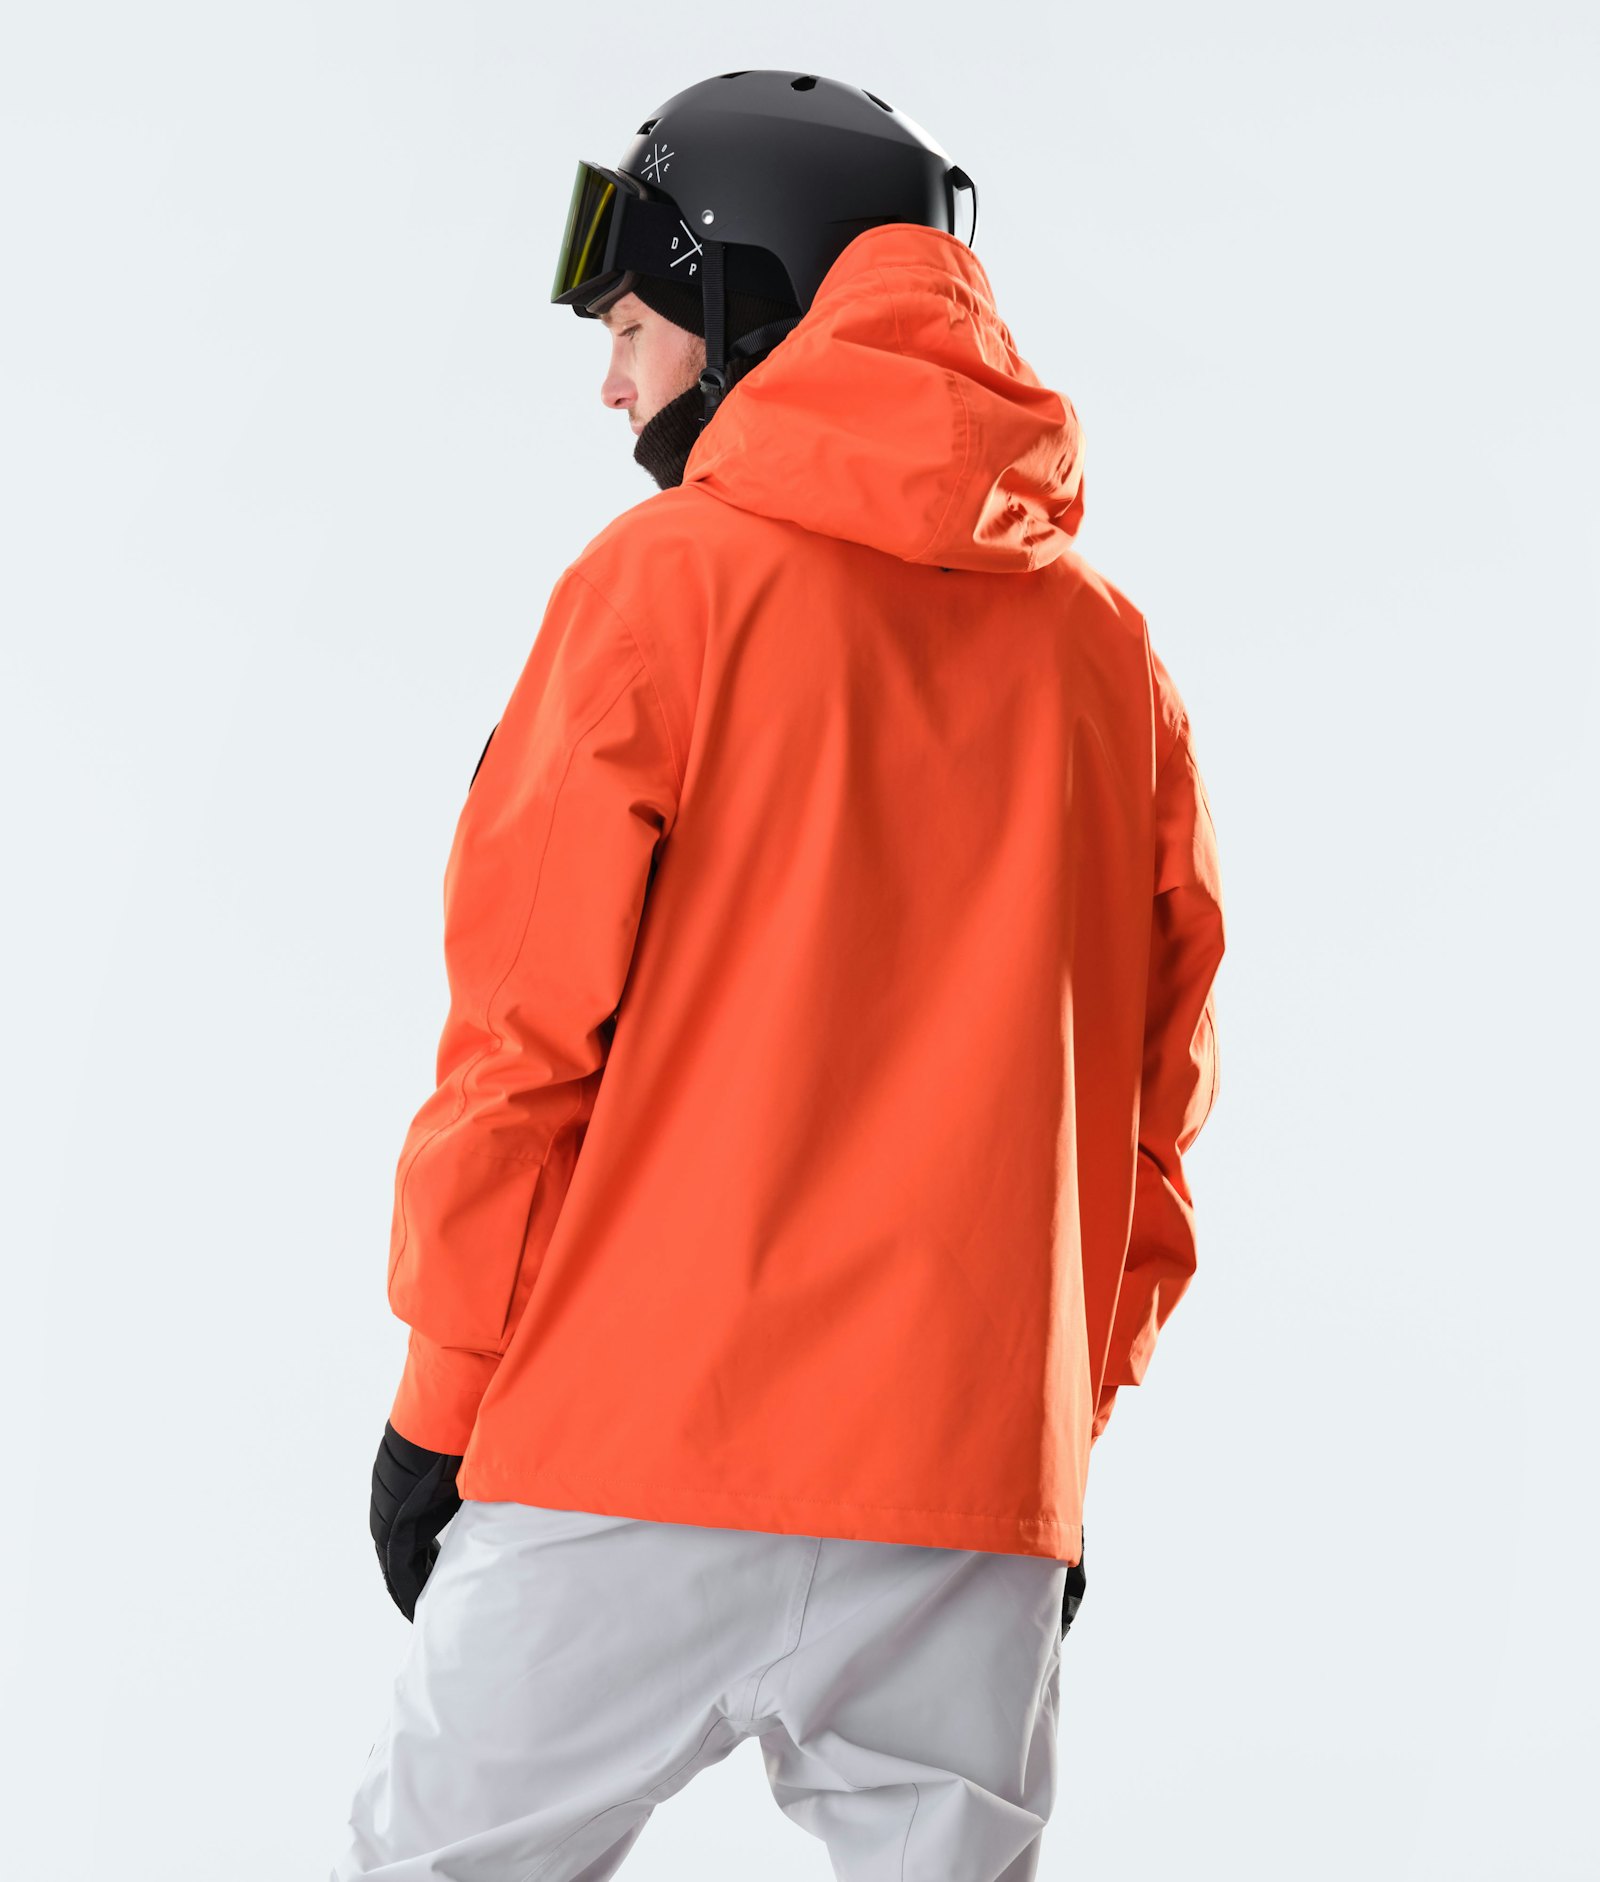 Blizzard 2020 Snowboardjacke Herren Orange